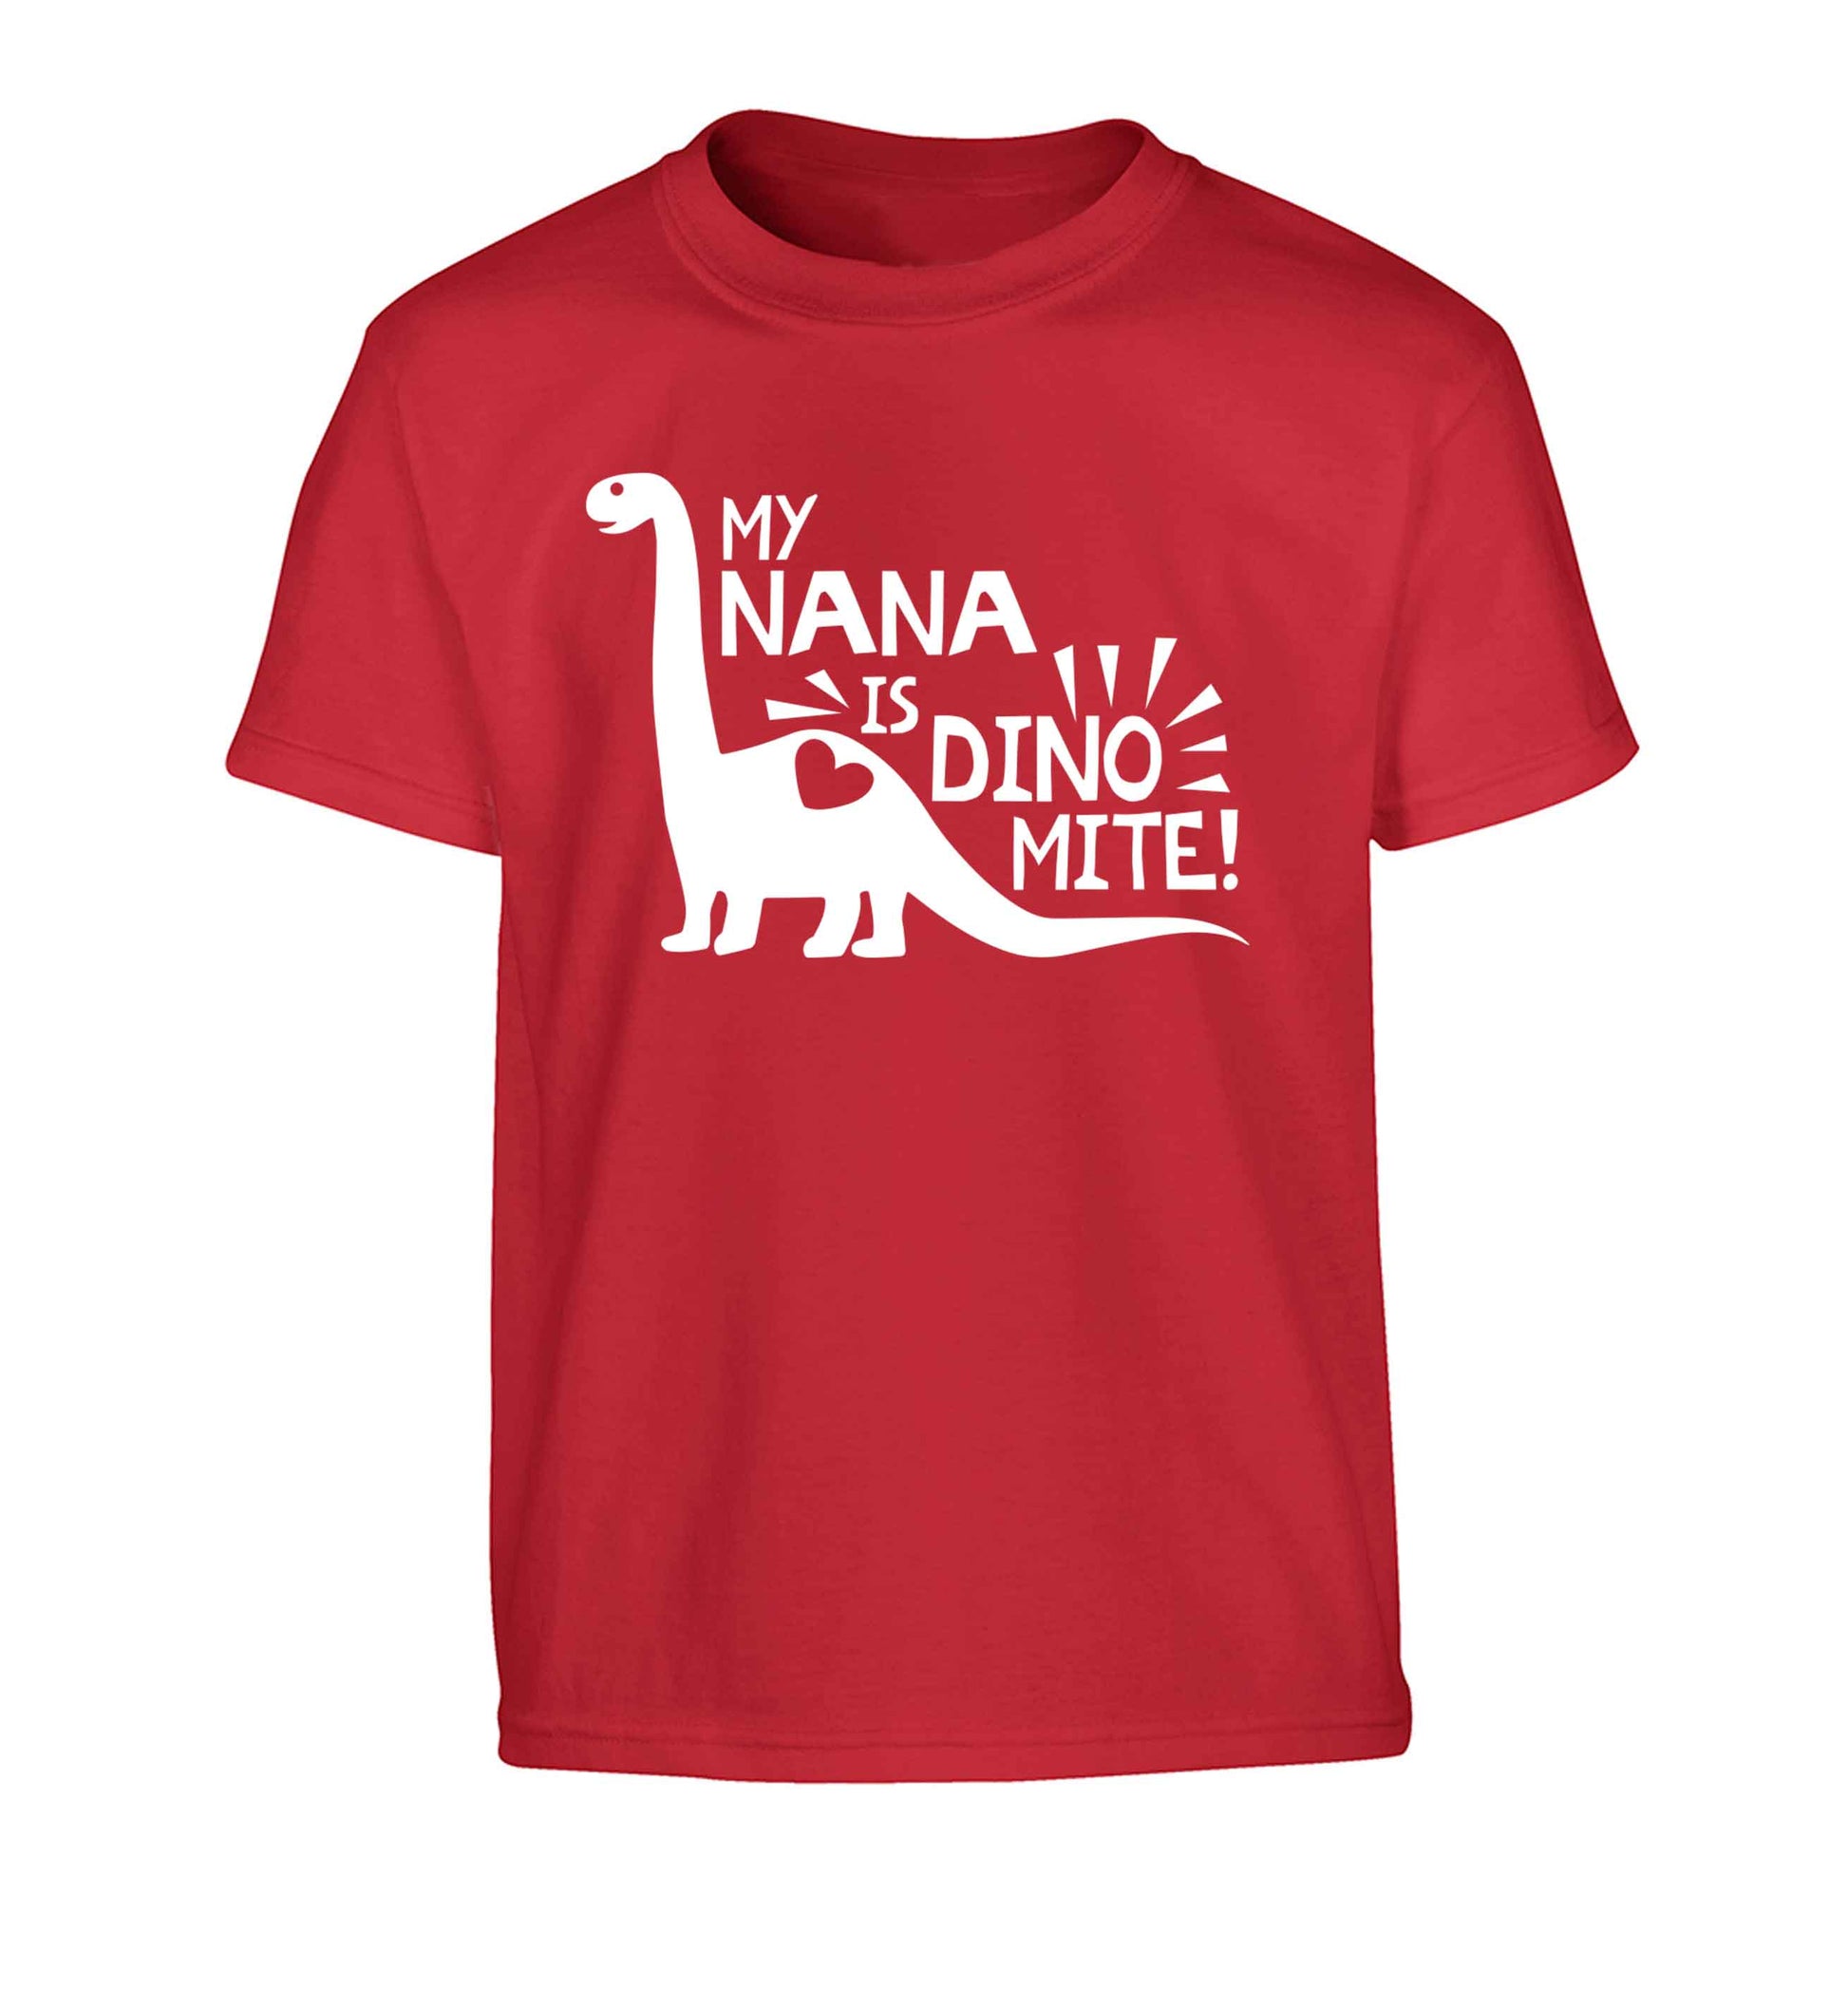 My nana is dinomite! Children's red Tshirt 12-13 Years